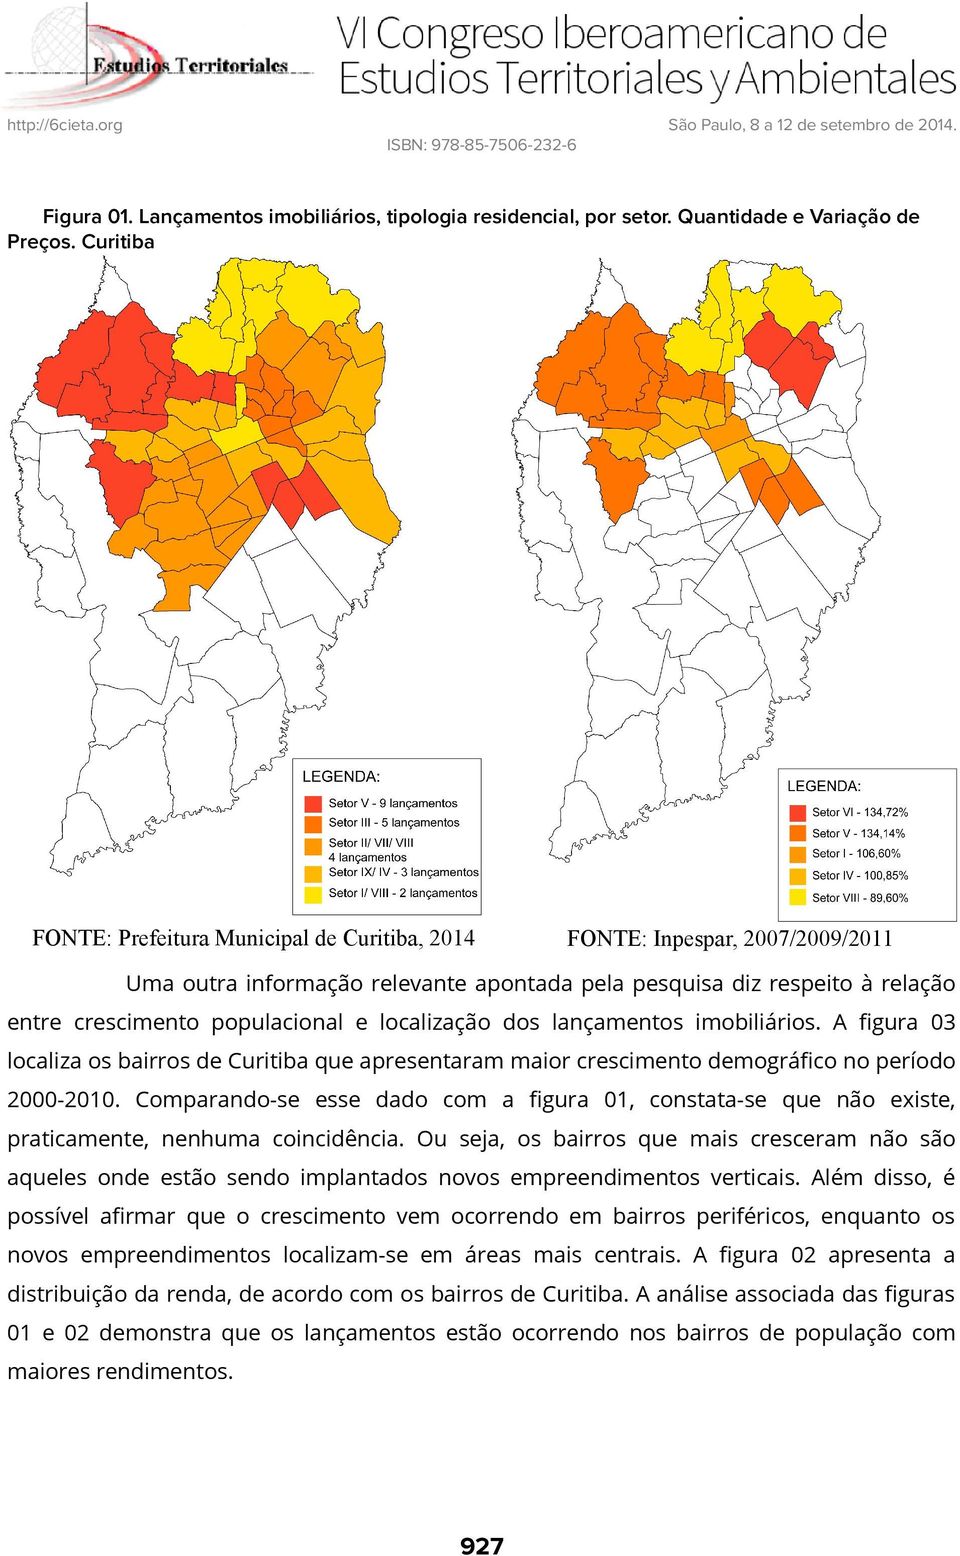 localização dos lançamentos imobiliários. A figura 03 localiza os bairros de Curitiba que apresentaram maior crescimento demográfico no período 2000-2010.